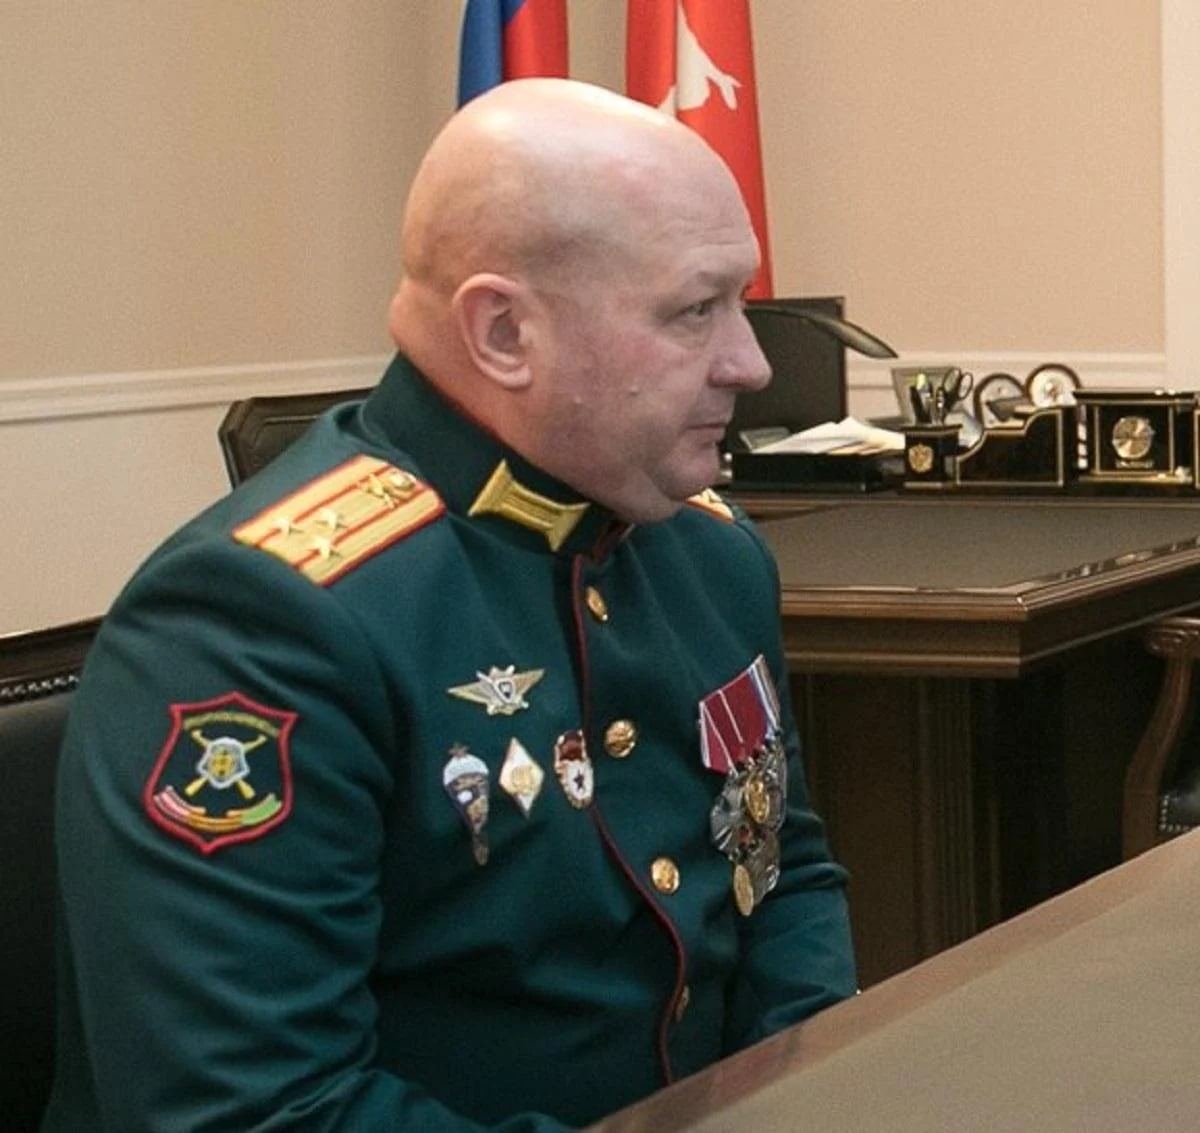 Идентифицирован командир, управляющий подразделением РФ в Энергодаре